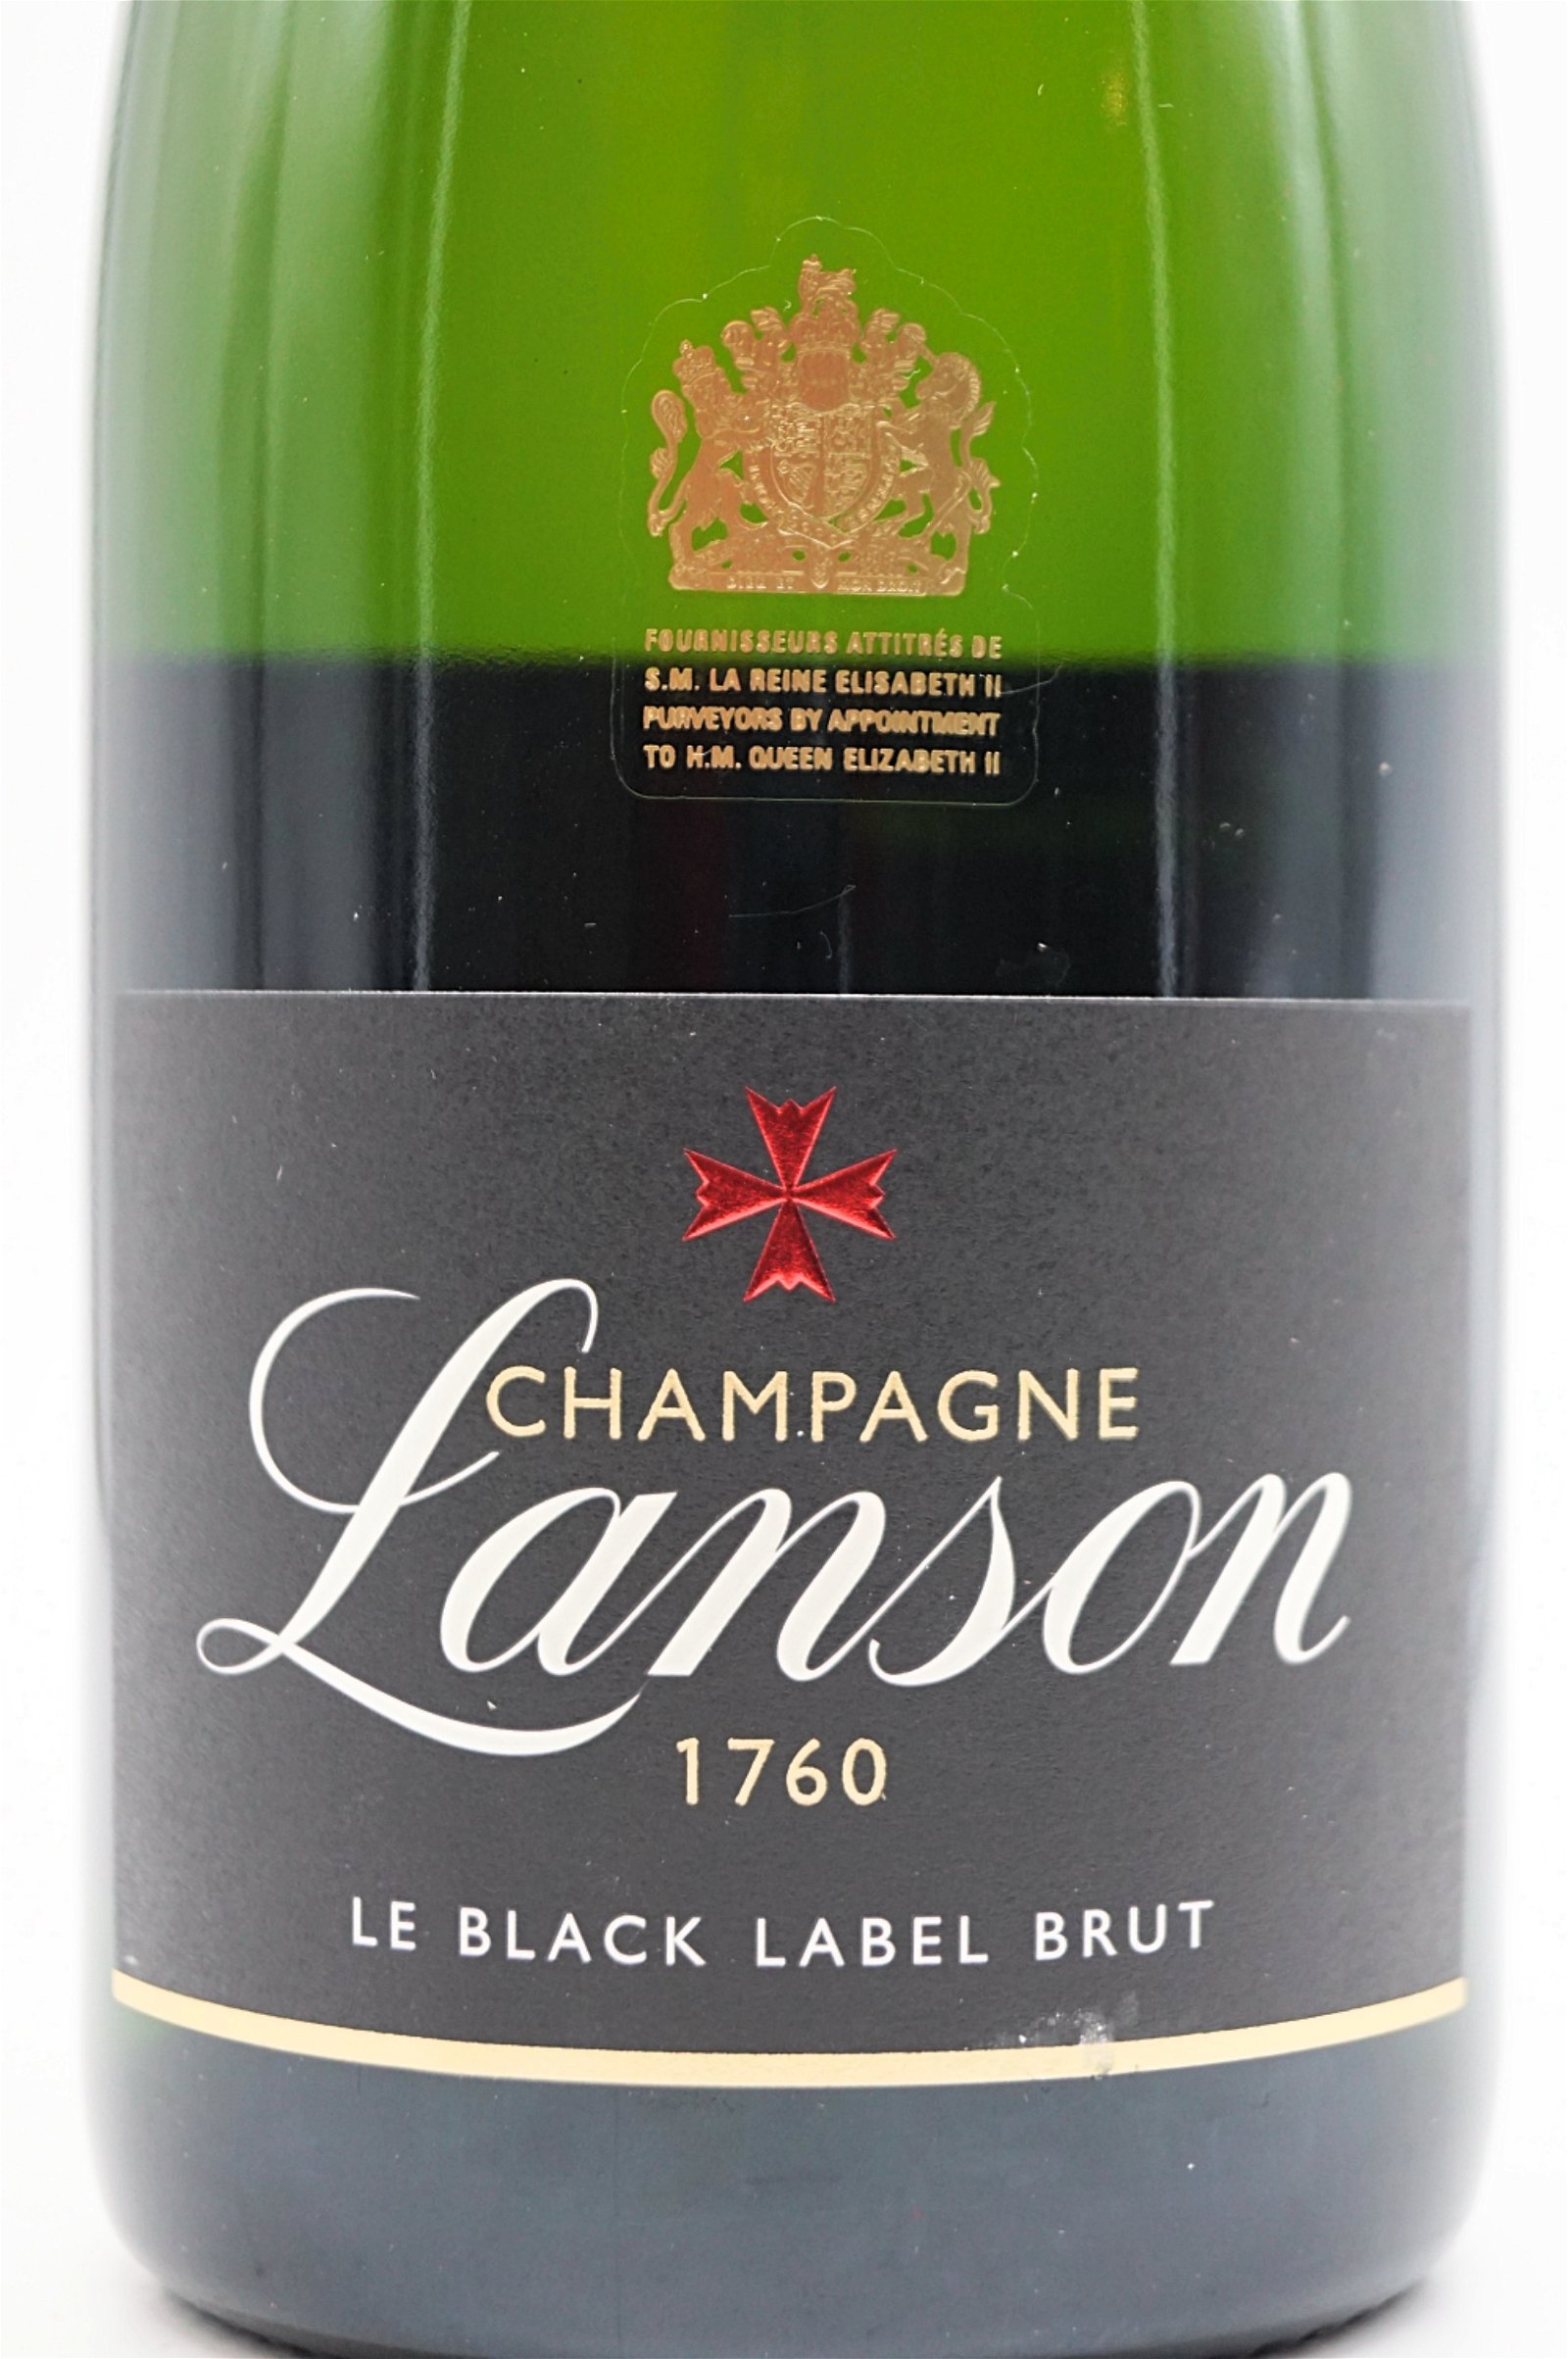 Champagner Le Black Label Brut | LH551